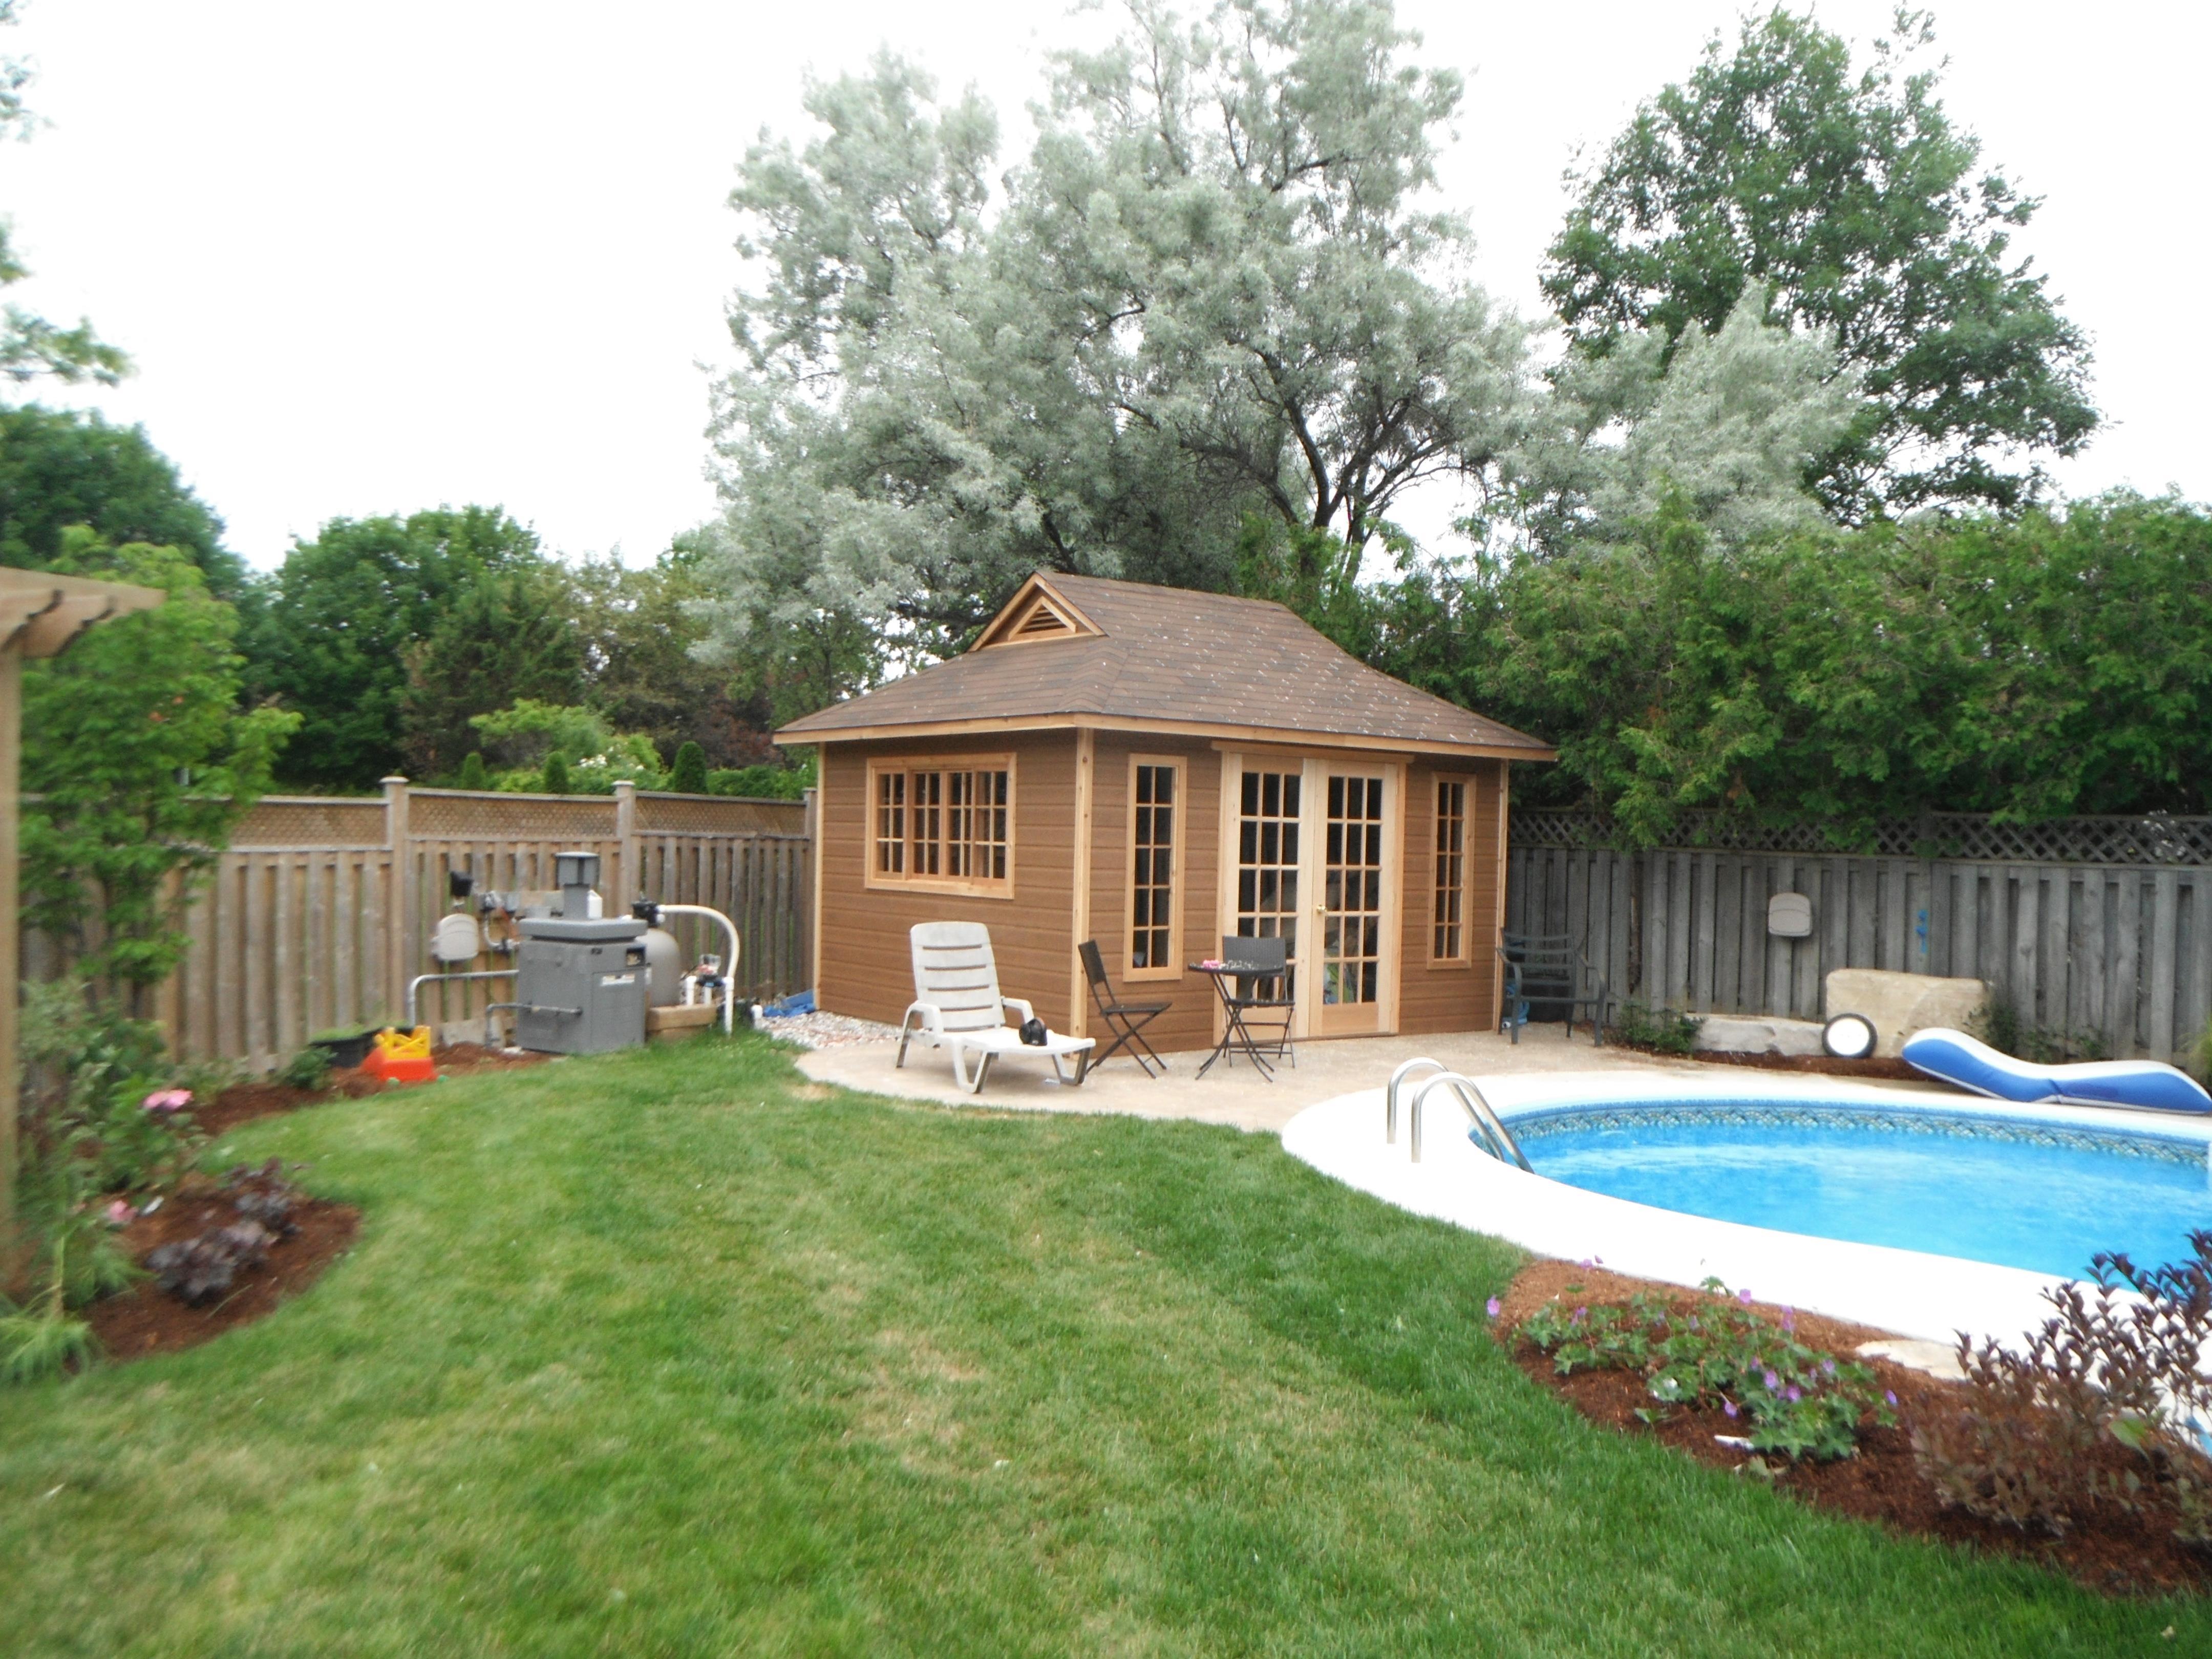 Canexel Santa Cruz pool house in Whitby Ontario 130184-0.